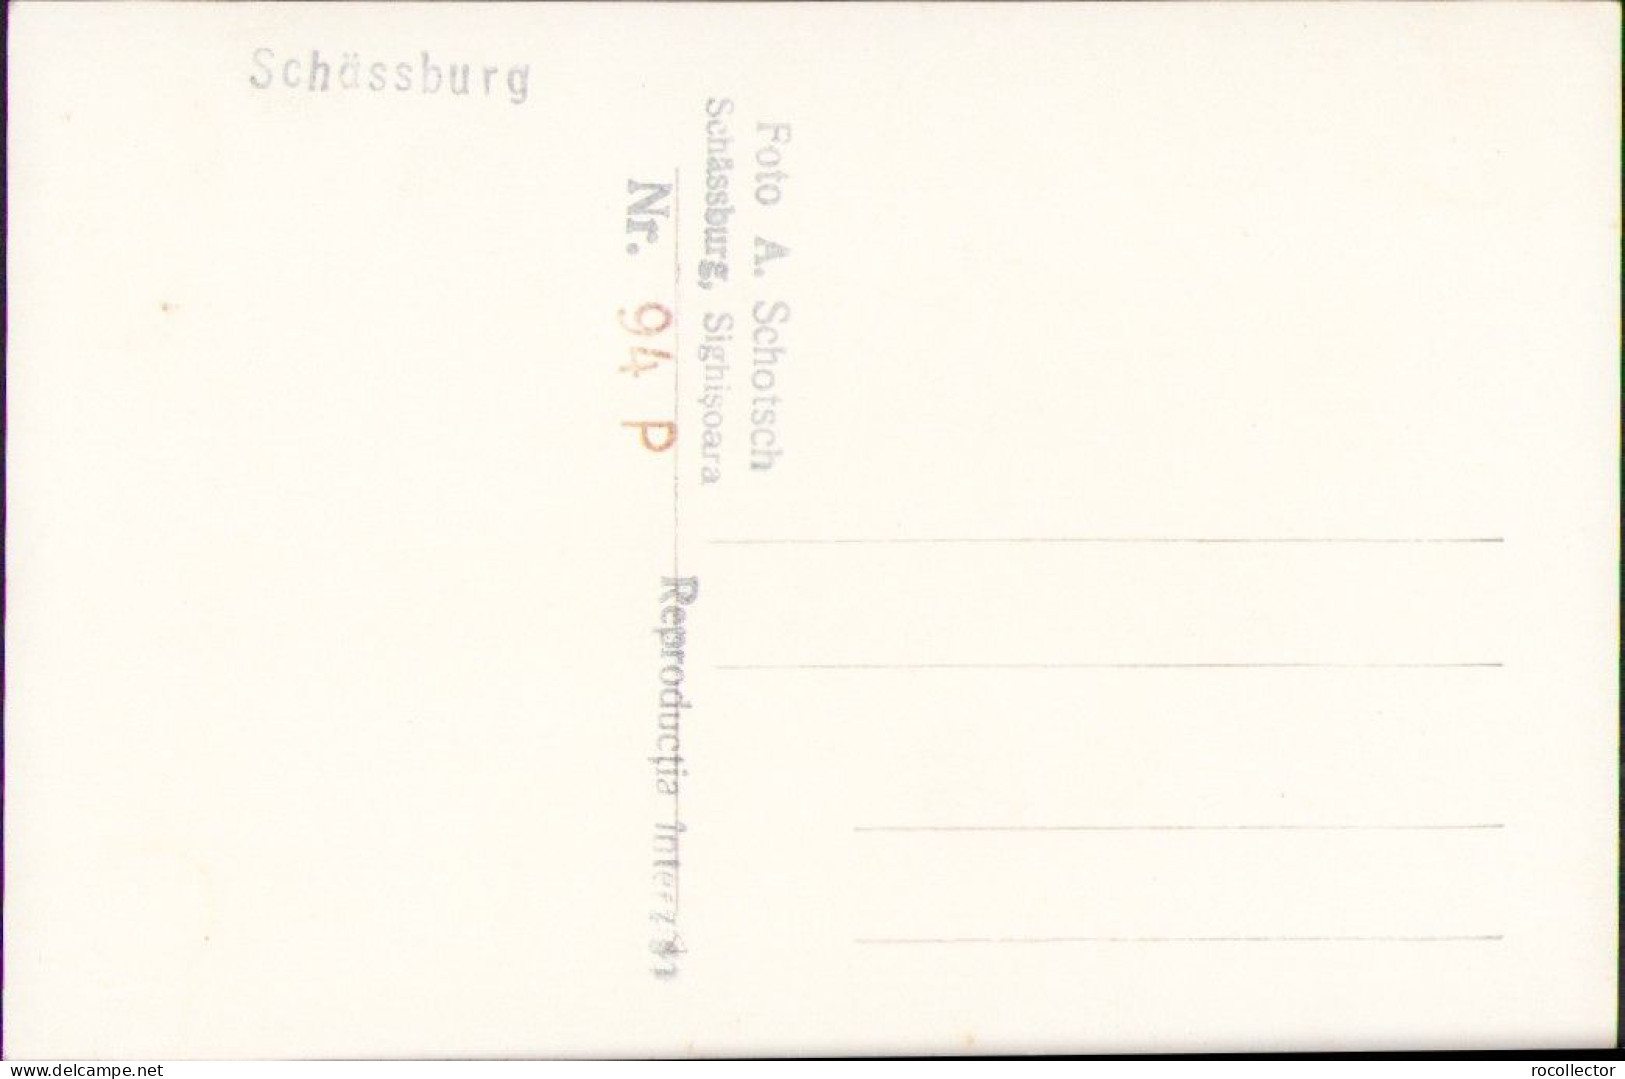 Schässburg Segesvar Sighișoara Studio Albert Schotsch Postcard CP359 - Roumanie